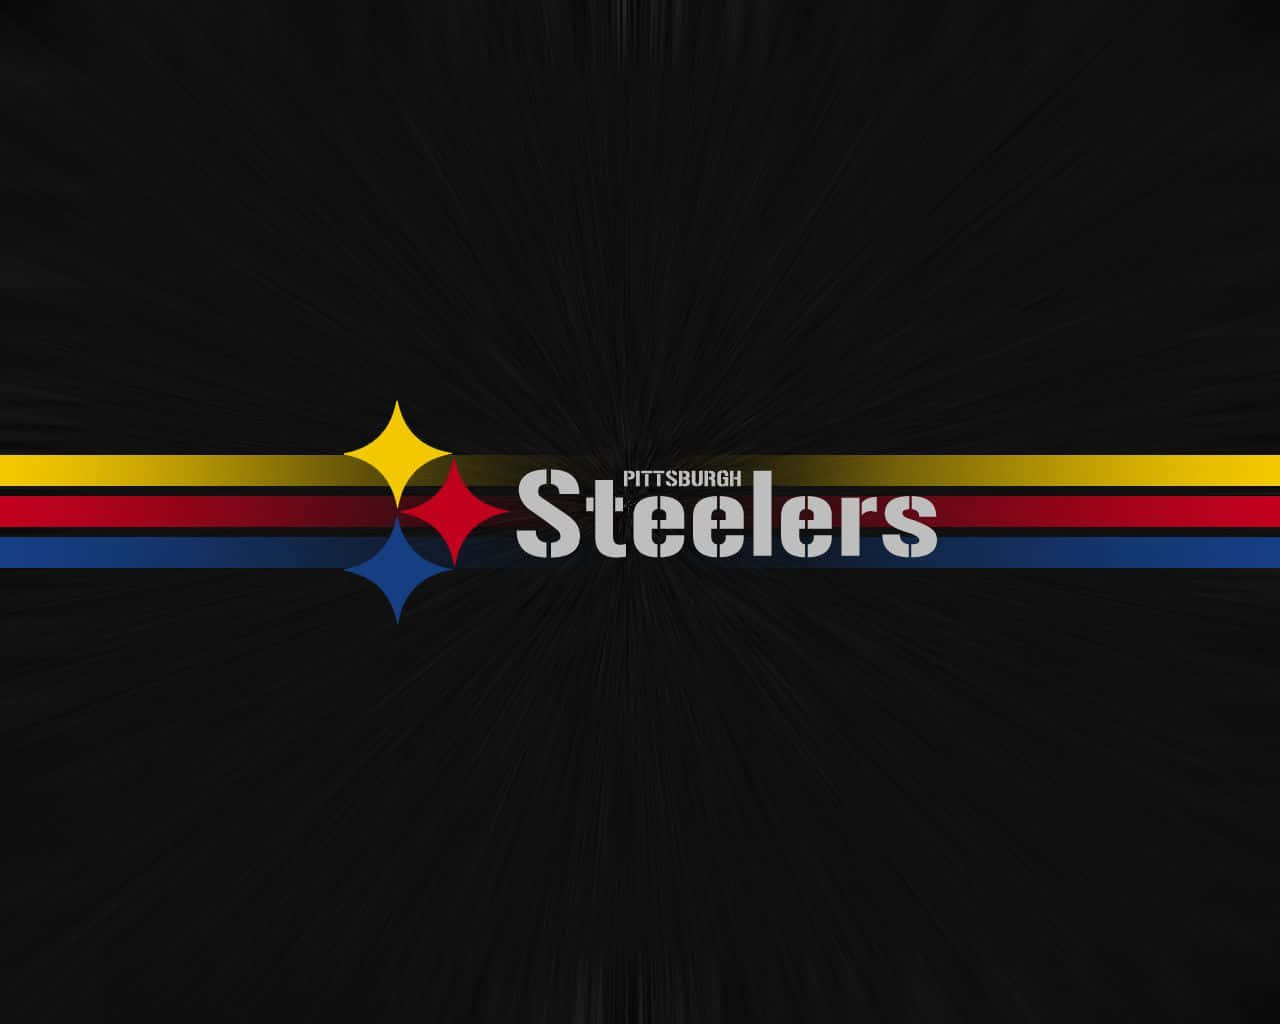 Tapet med Stålnationens logo: Et tapet, der fremhæver det genkendelige Pittsburgh Steelers logo. Wallpaper